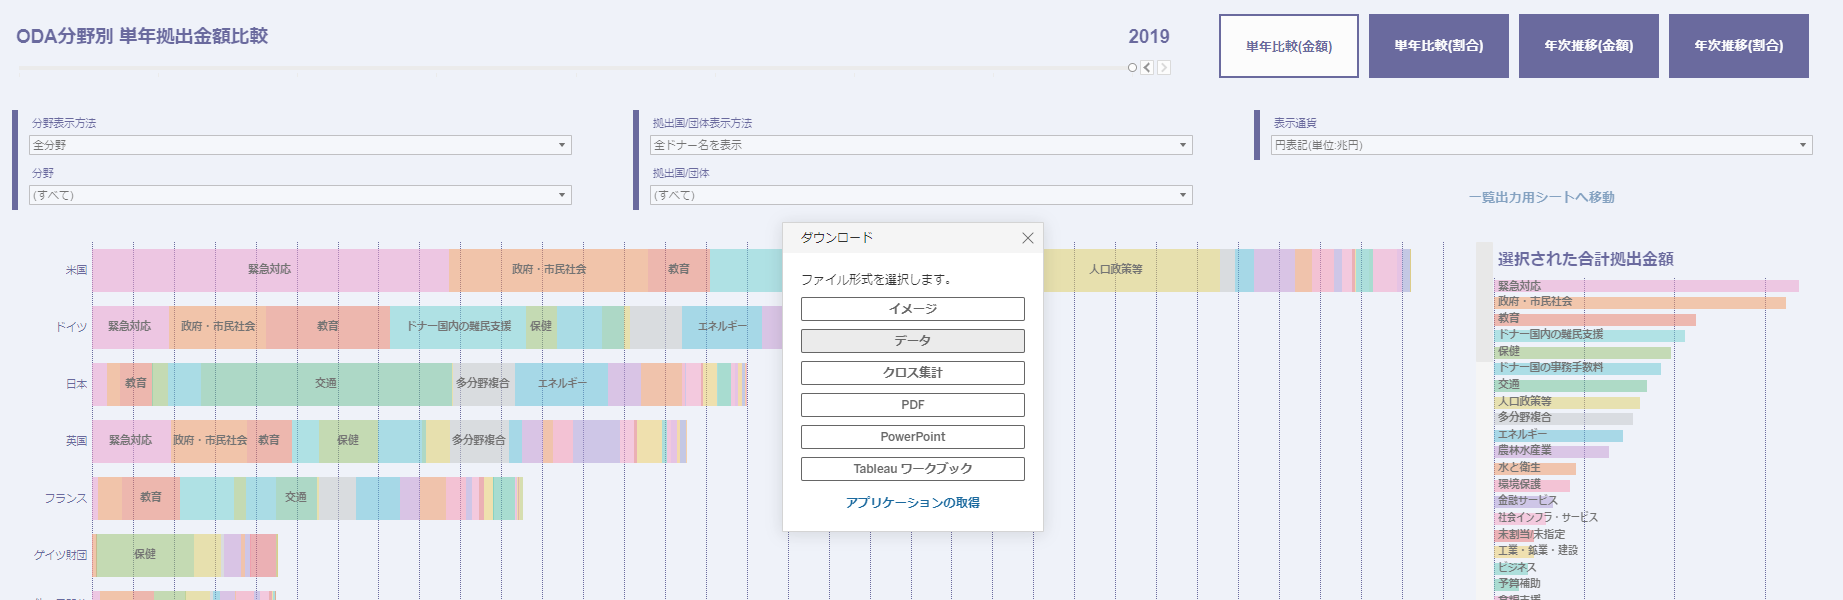 日本語_データのダウンロード